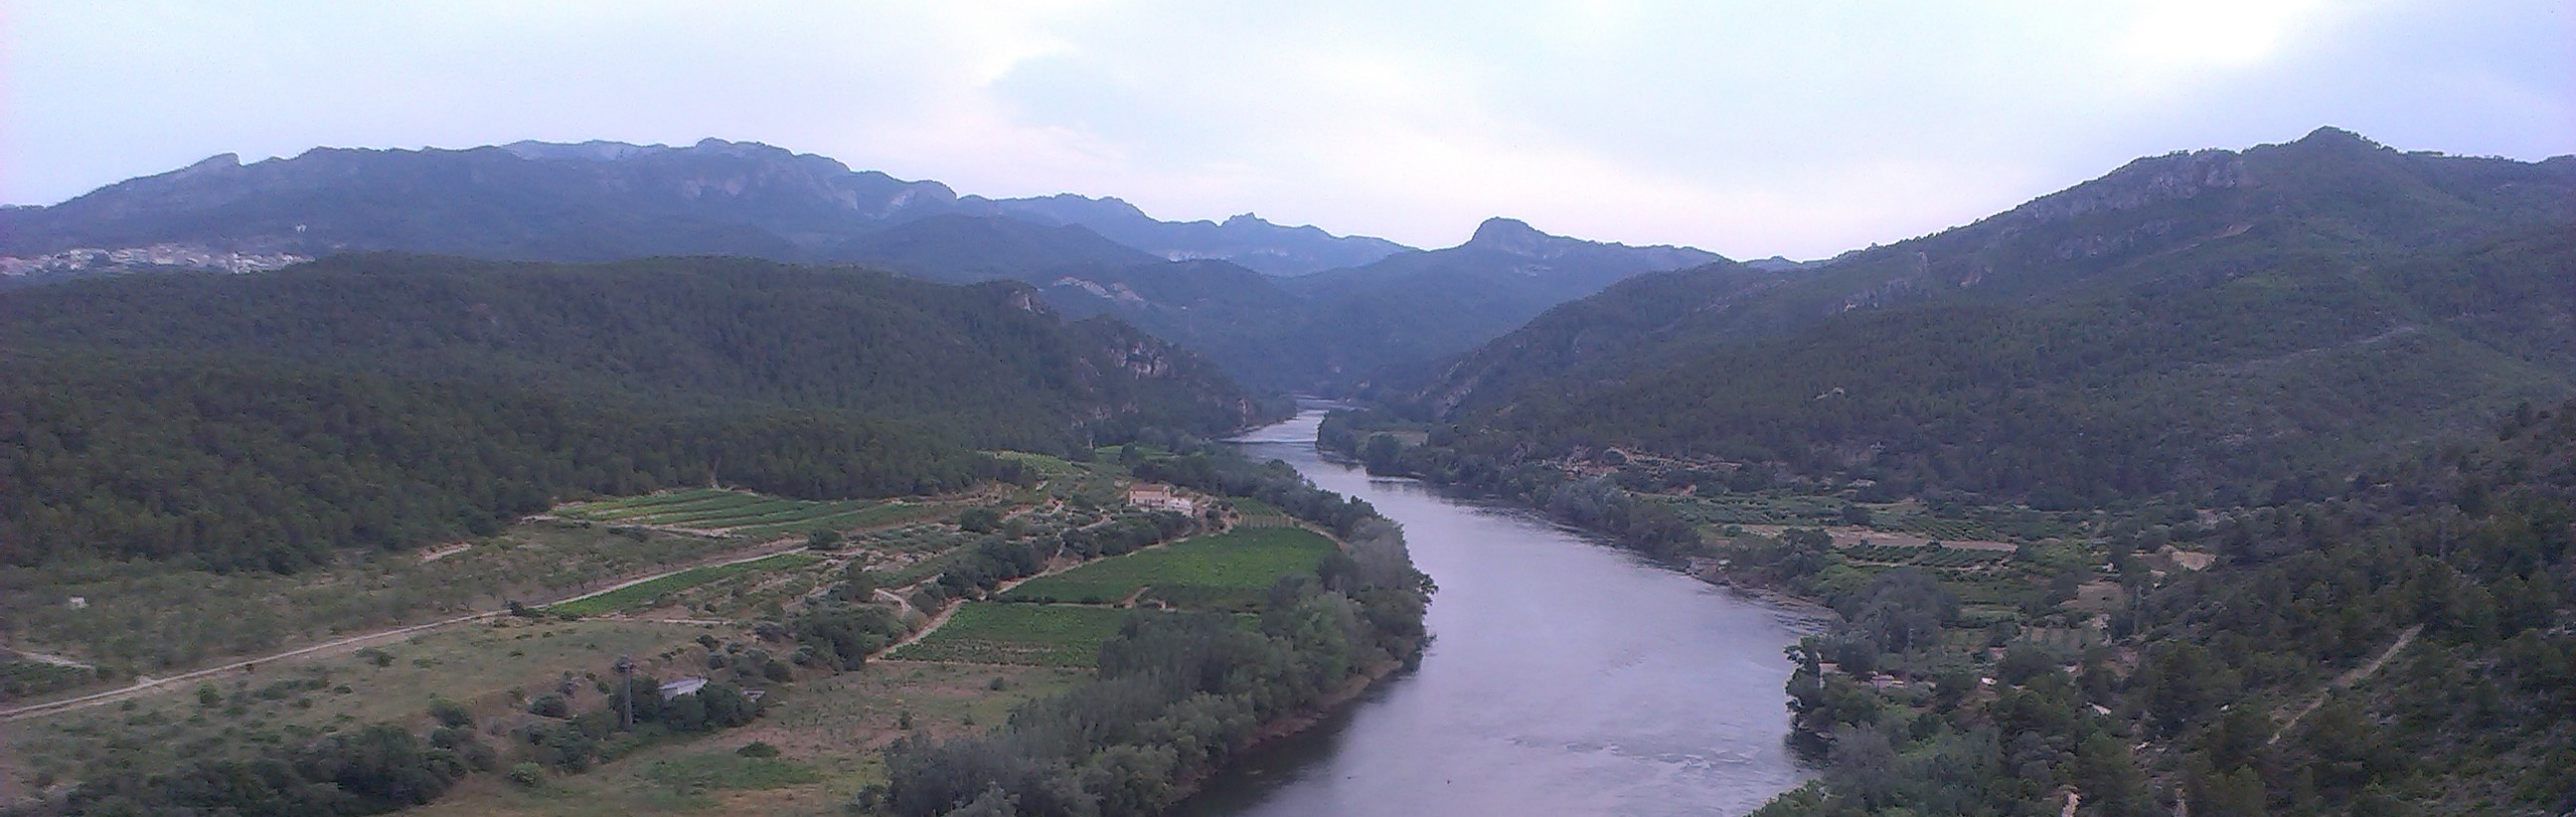 AVISO HIDROLÓGICO - Debido a las lluvias, se intensifica la vigilancia en cauces con cuenca vertiente pequeña y barrancos de los dos tercios orientales de la Cuenca del Ebro